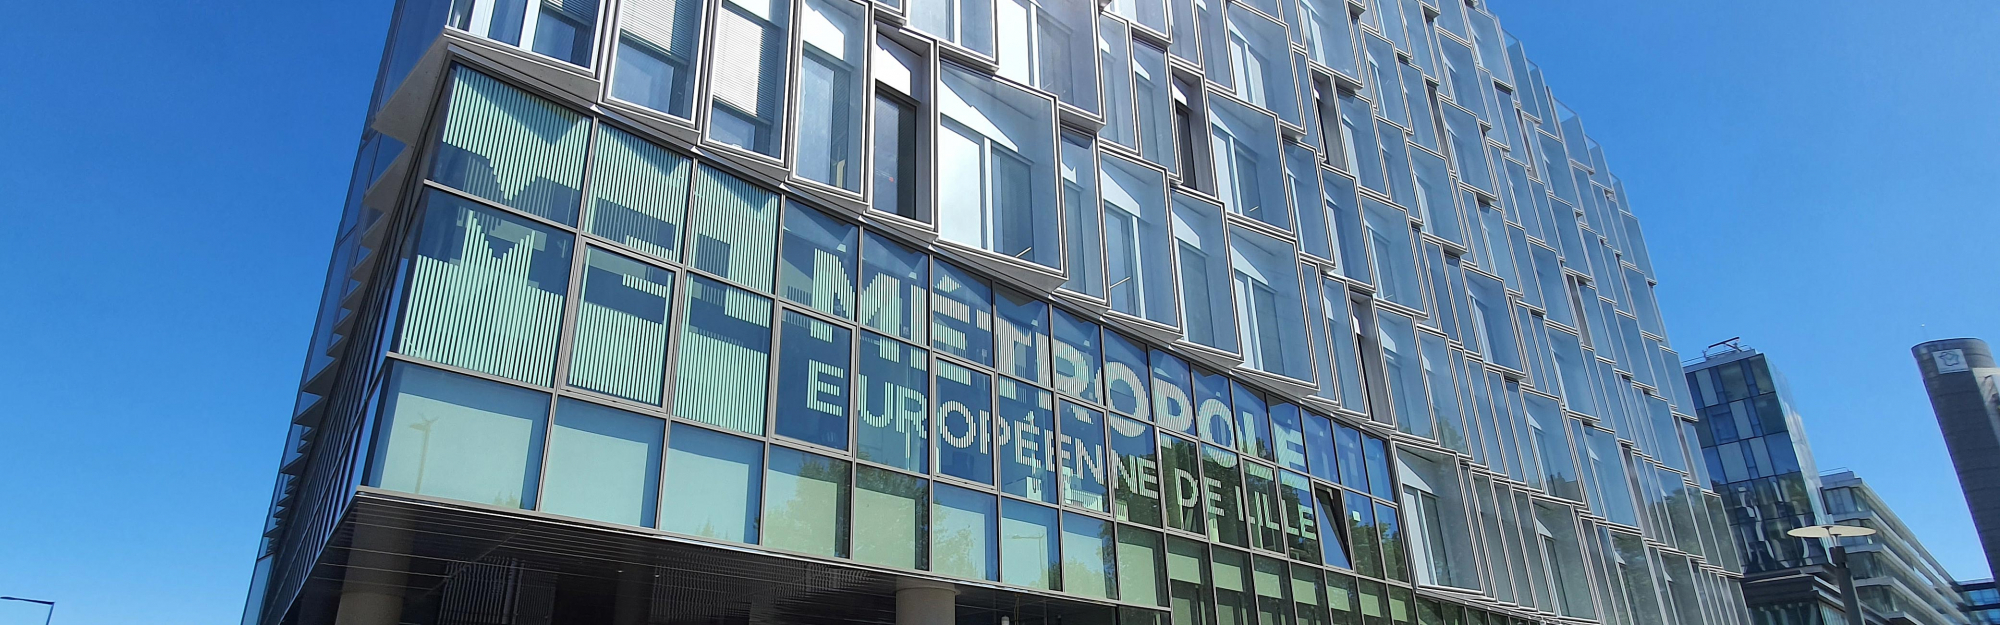 vue extérieure du siège de la Métropole Européenne de Lille